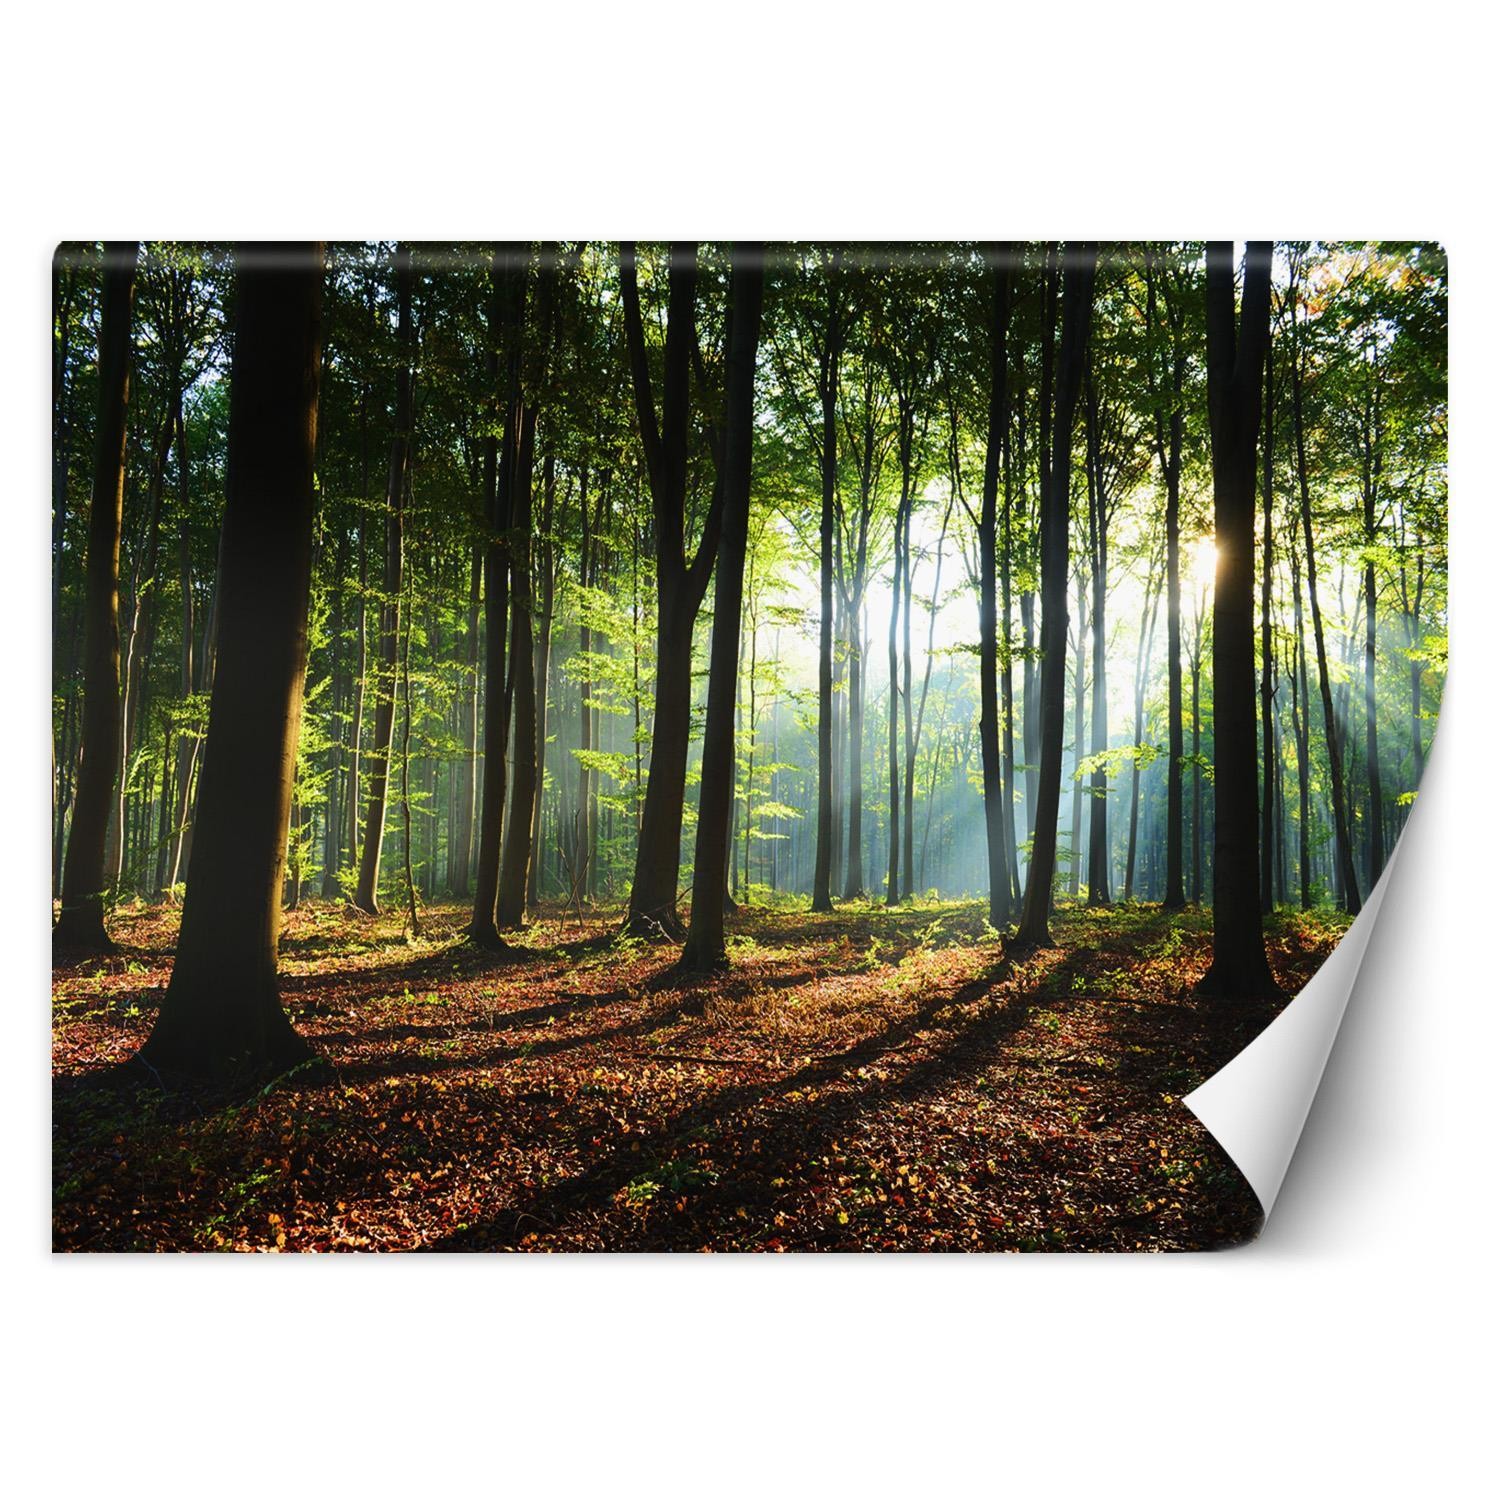 Trend24 – Behang – Ochtend In Het Bos – Behangpapier – Fotobehang Natuur – Behang Woonkamer – 250x175x2 cm – Incl. behanglijm